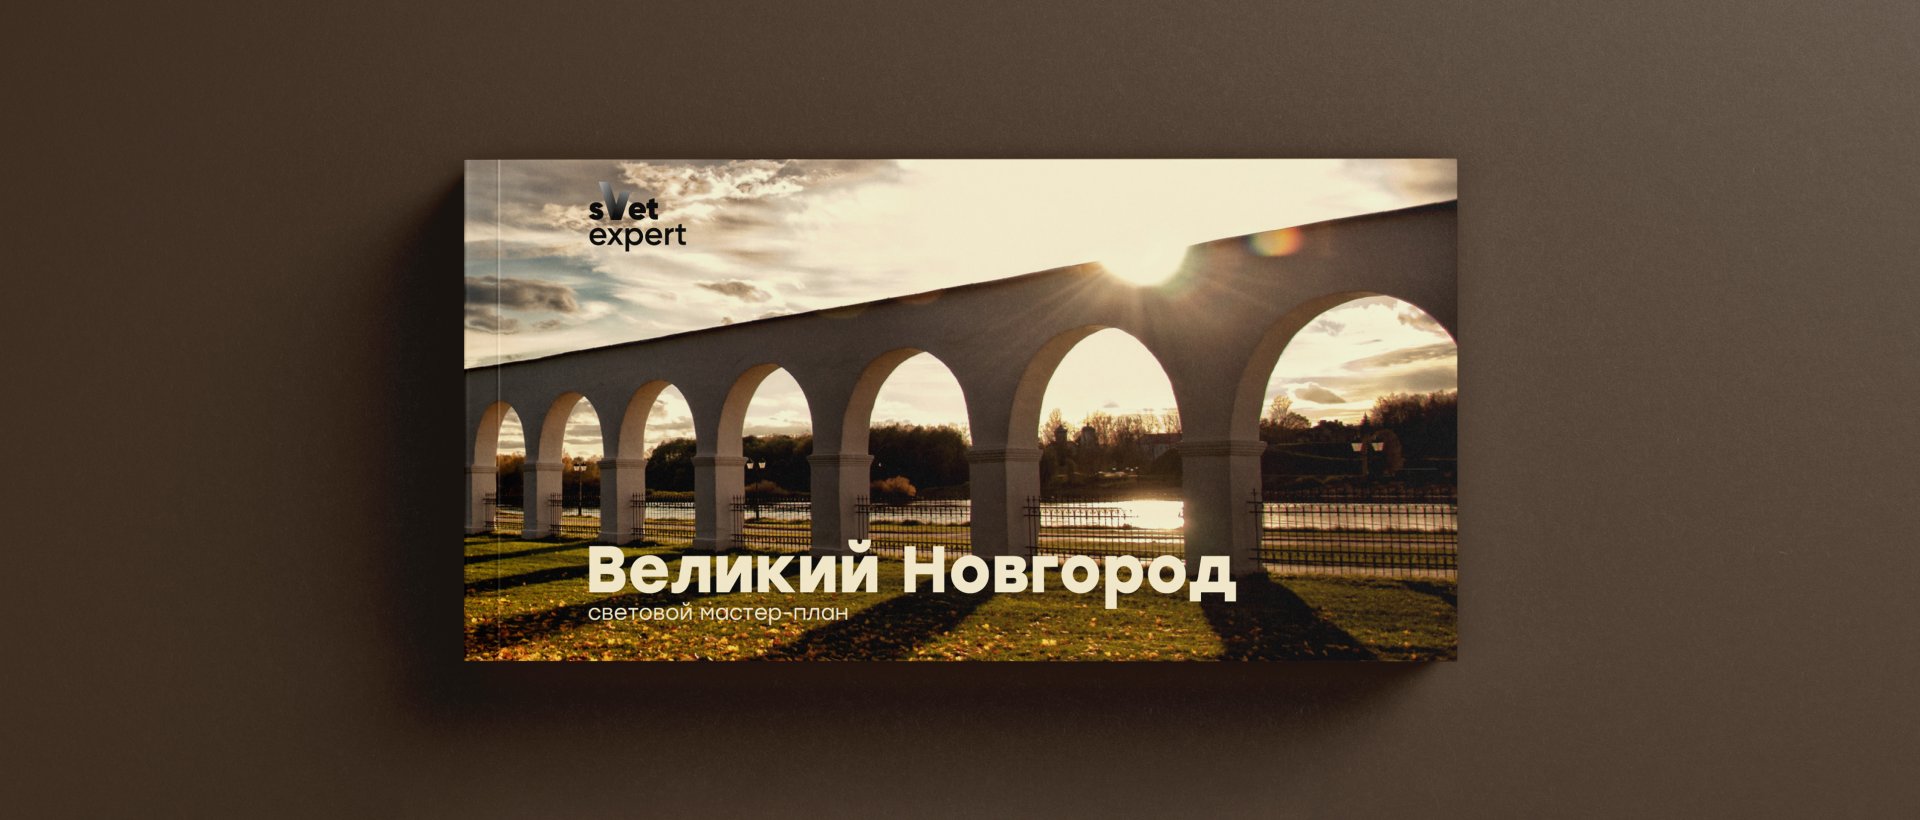 Мастер-план Великий Новгород - проект наружного освещения